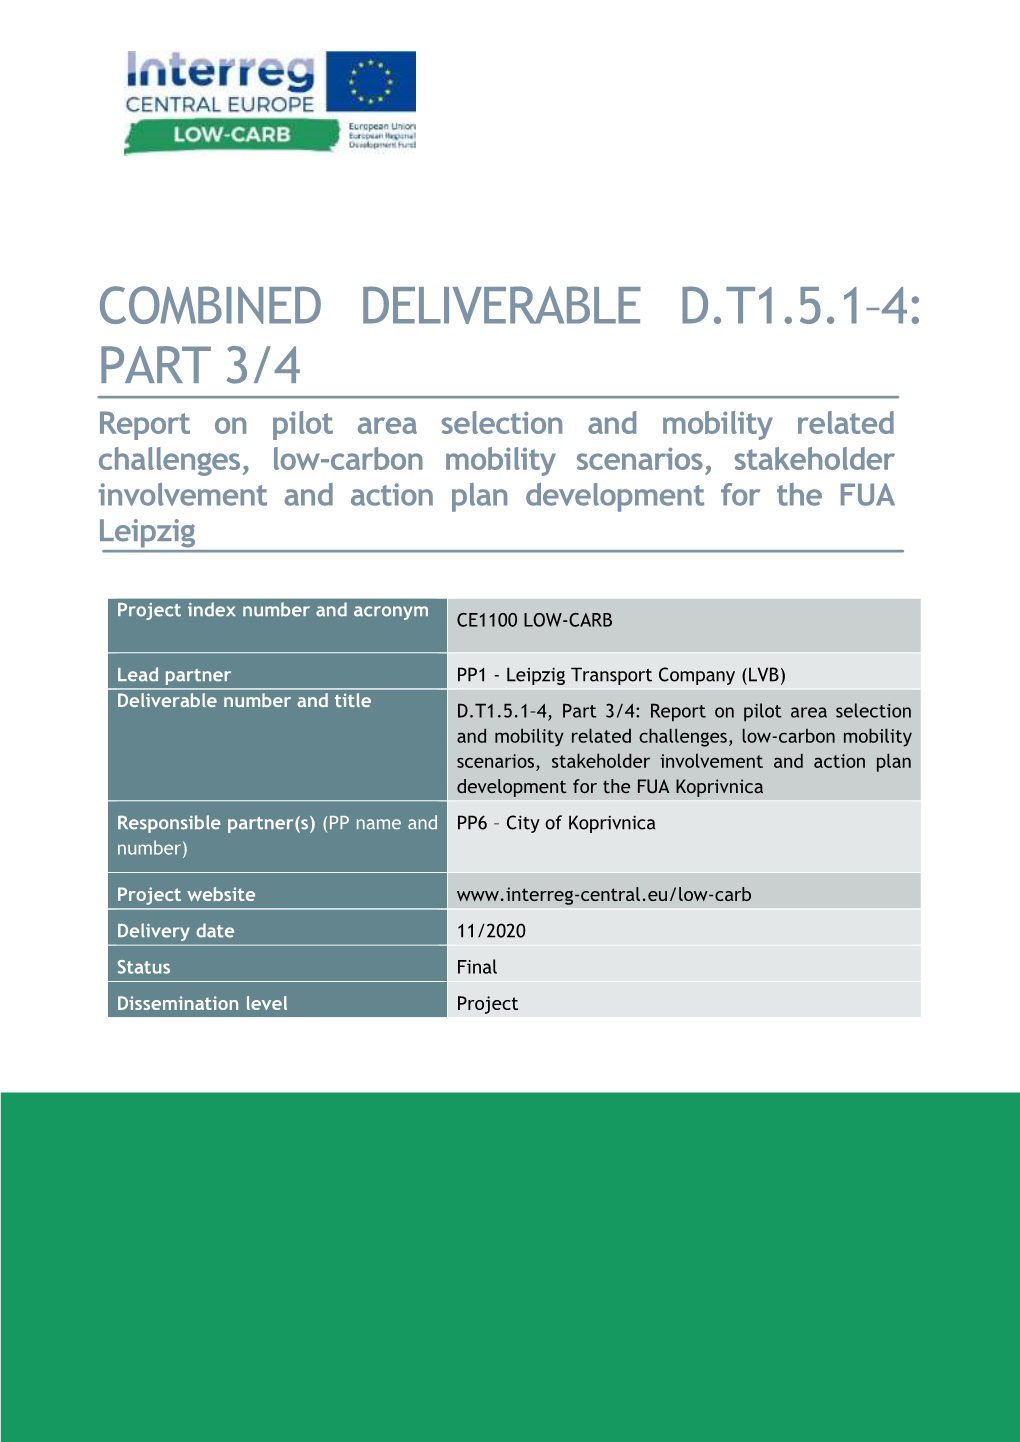 LOW-CARB D.T1.5.1-4 Koprivnica Action Plan